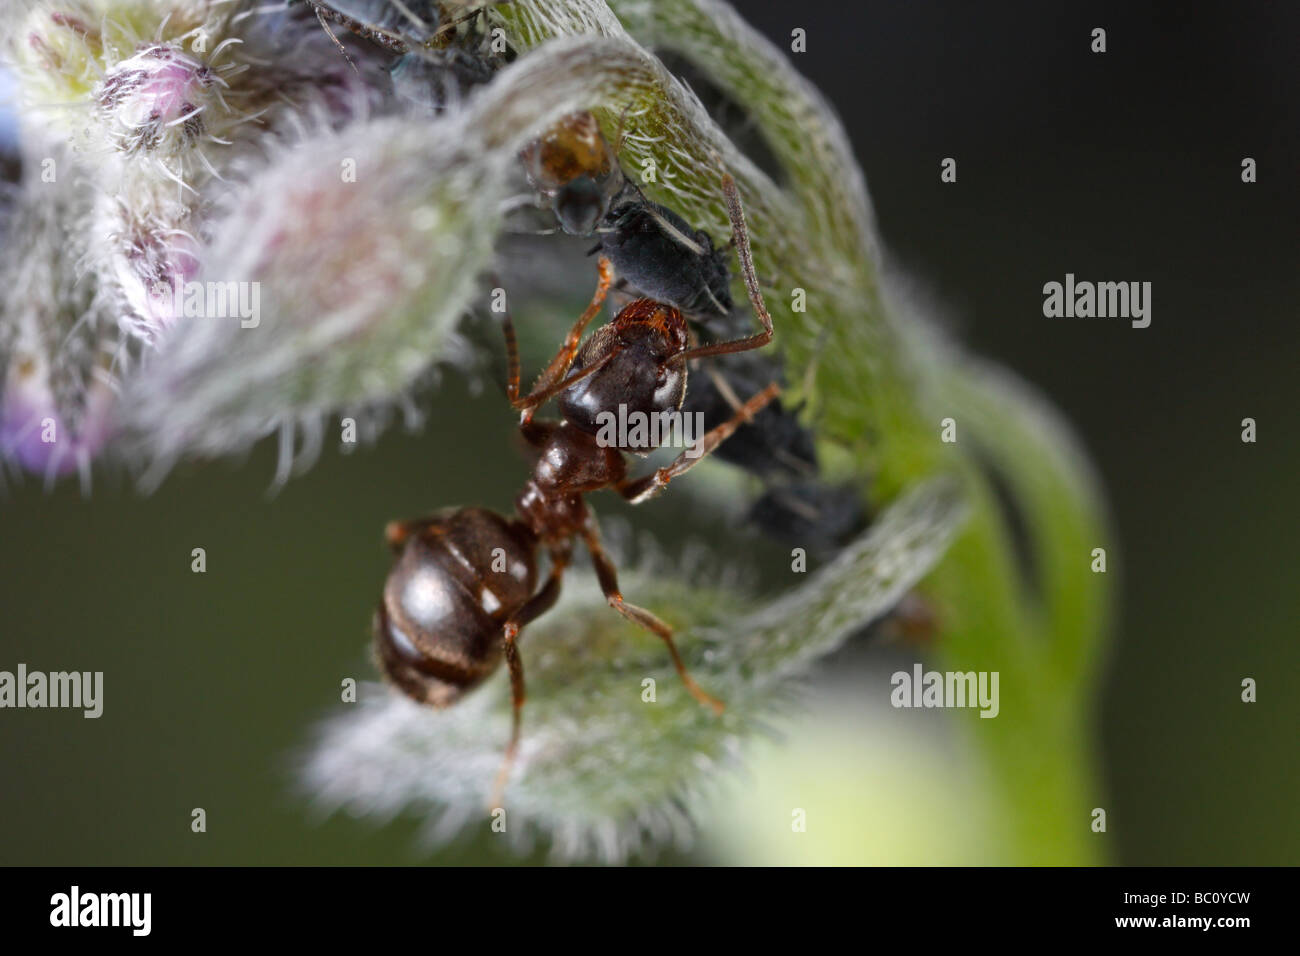 Lasius niger, la hormiga negra de jardín, y los áfidos. La hormiga es ordeñar los áfidos. La flor es una borraja flor o estrella. Foto de stock